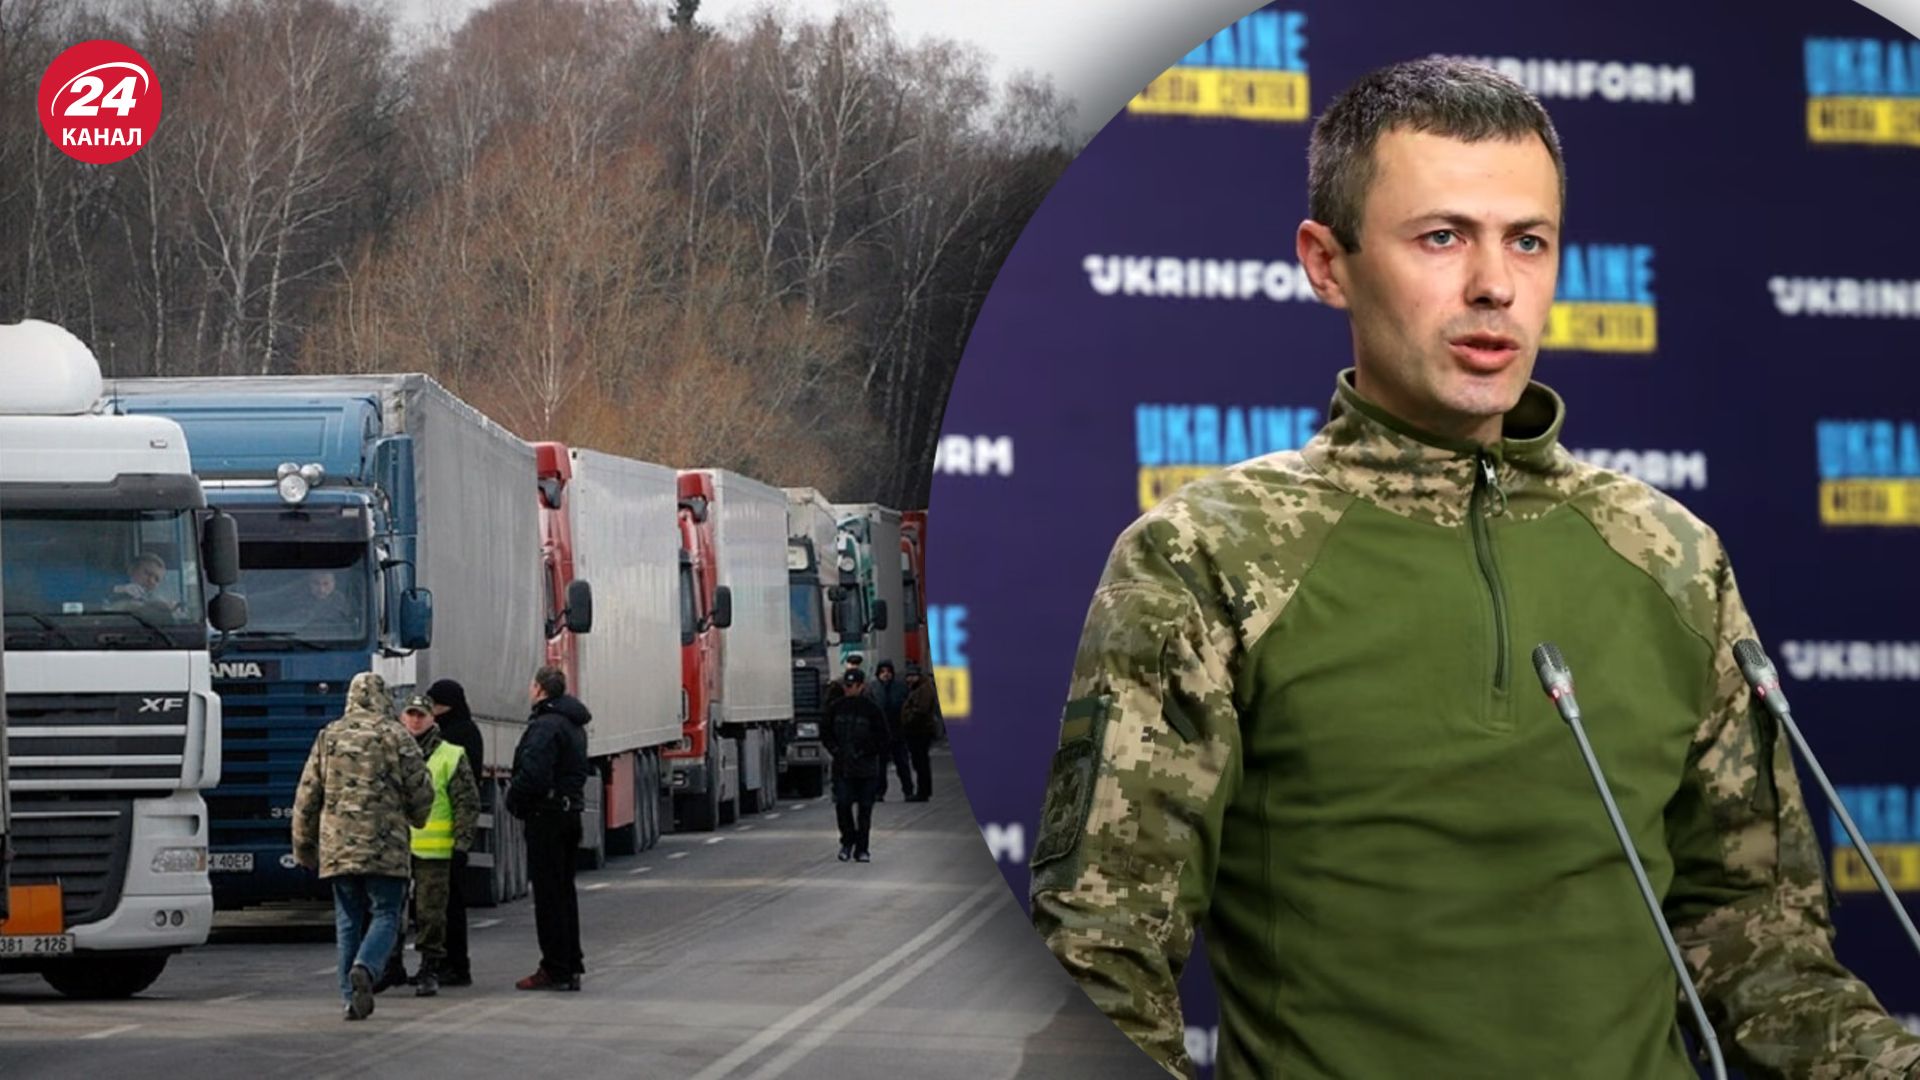 Какова ситуация на украинско-польской границе